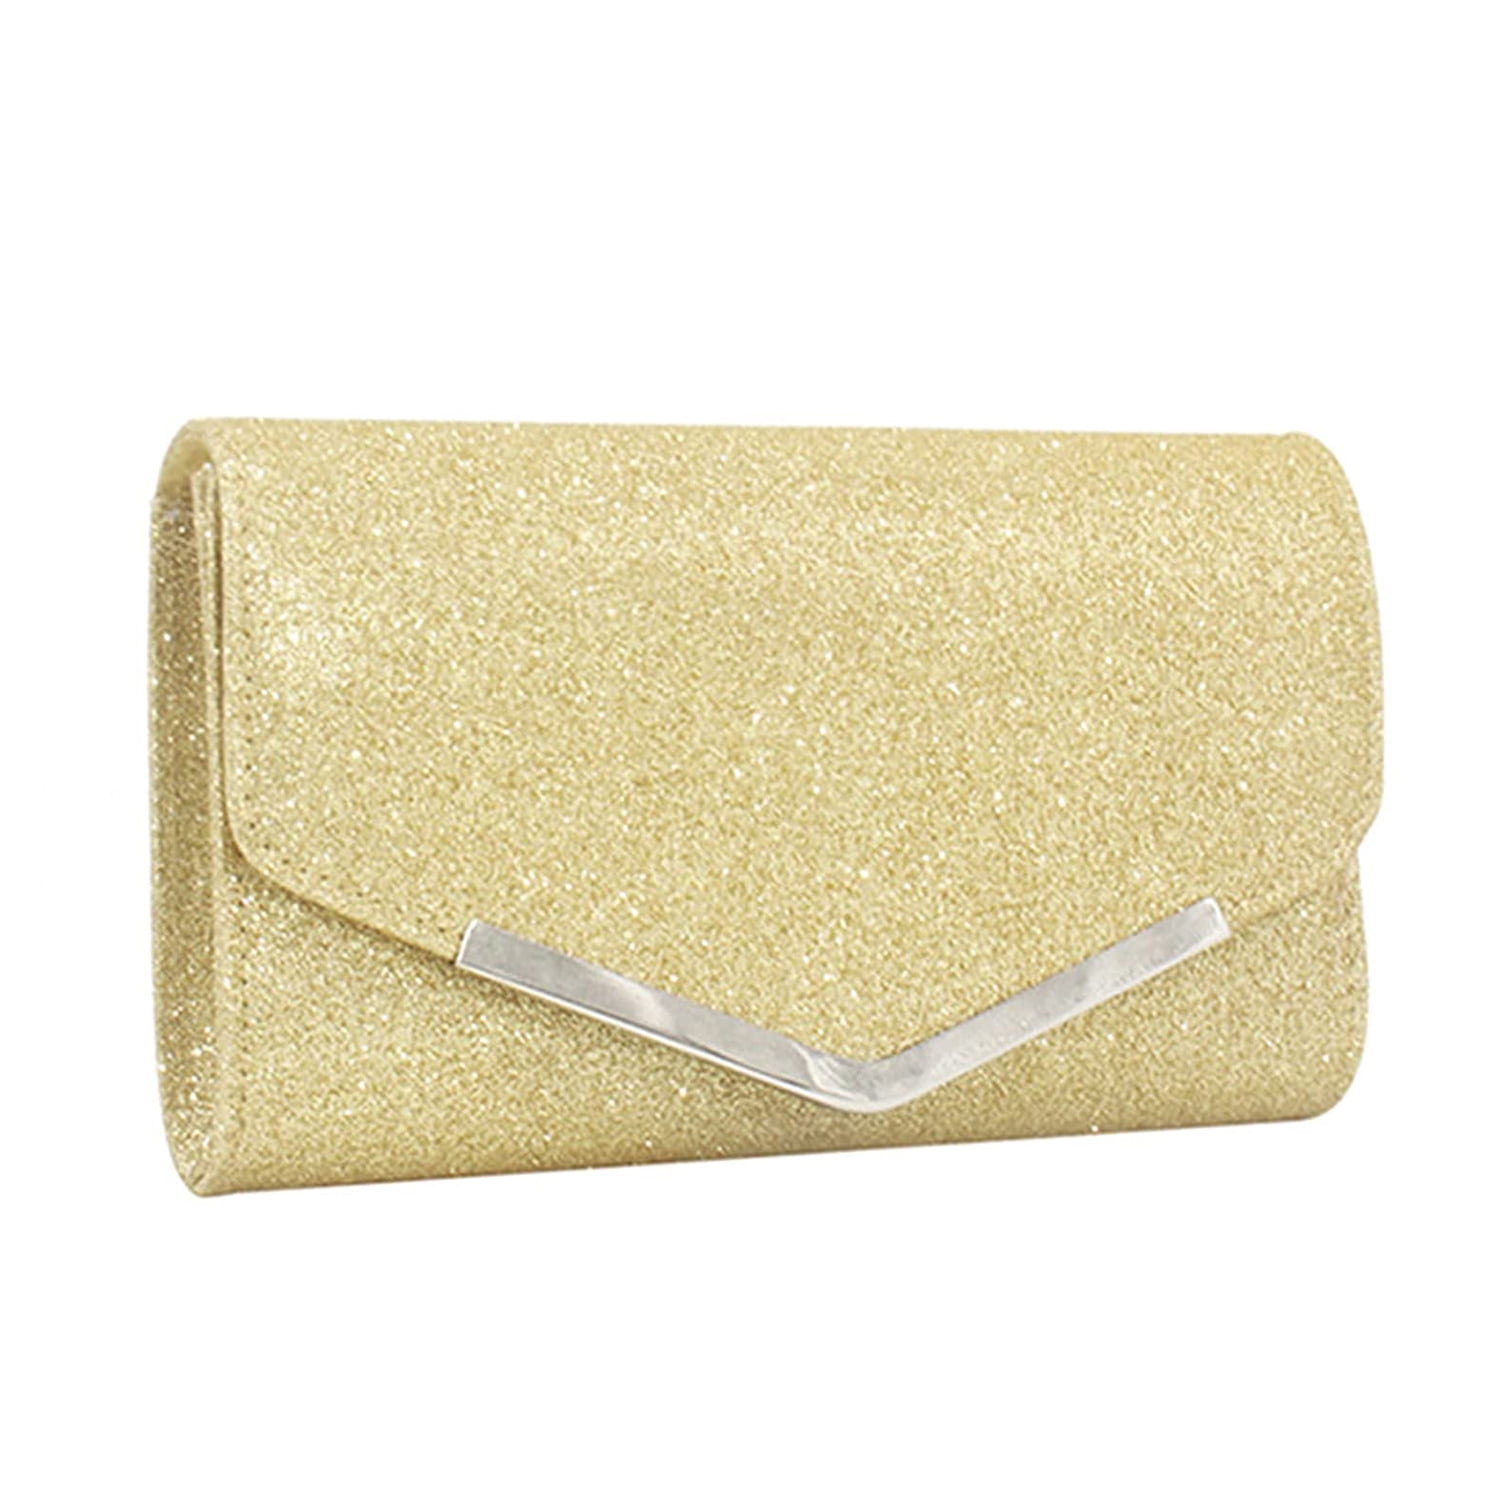 Women Glitter Clutch Purse Evening Party Wedding Banquet Handbag Shoulder  Bag (Gold) - Walmart.com